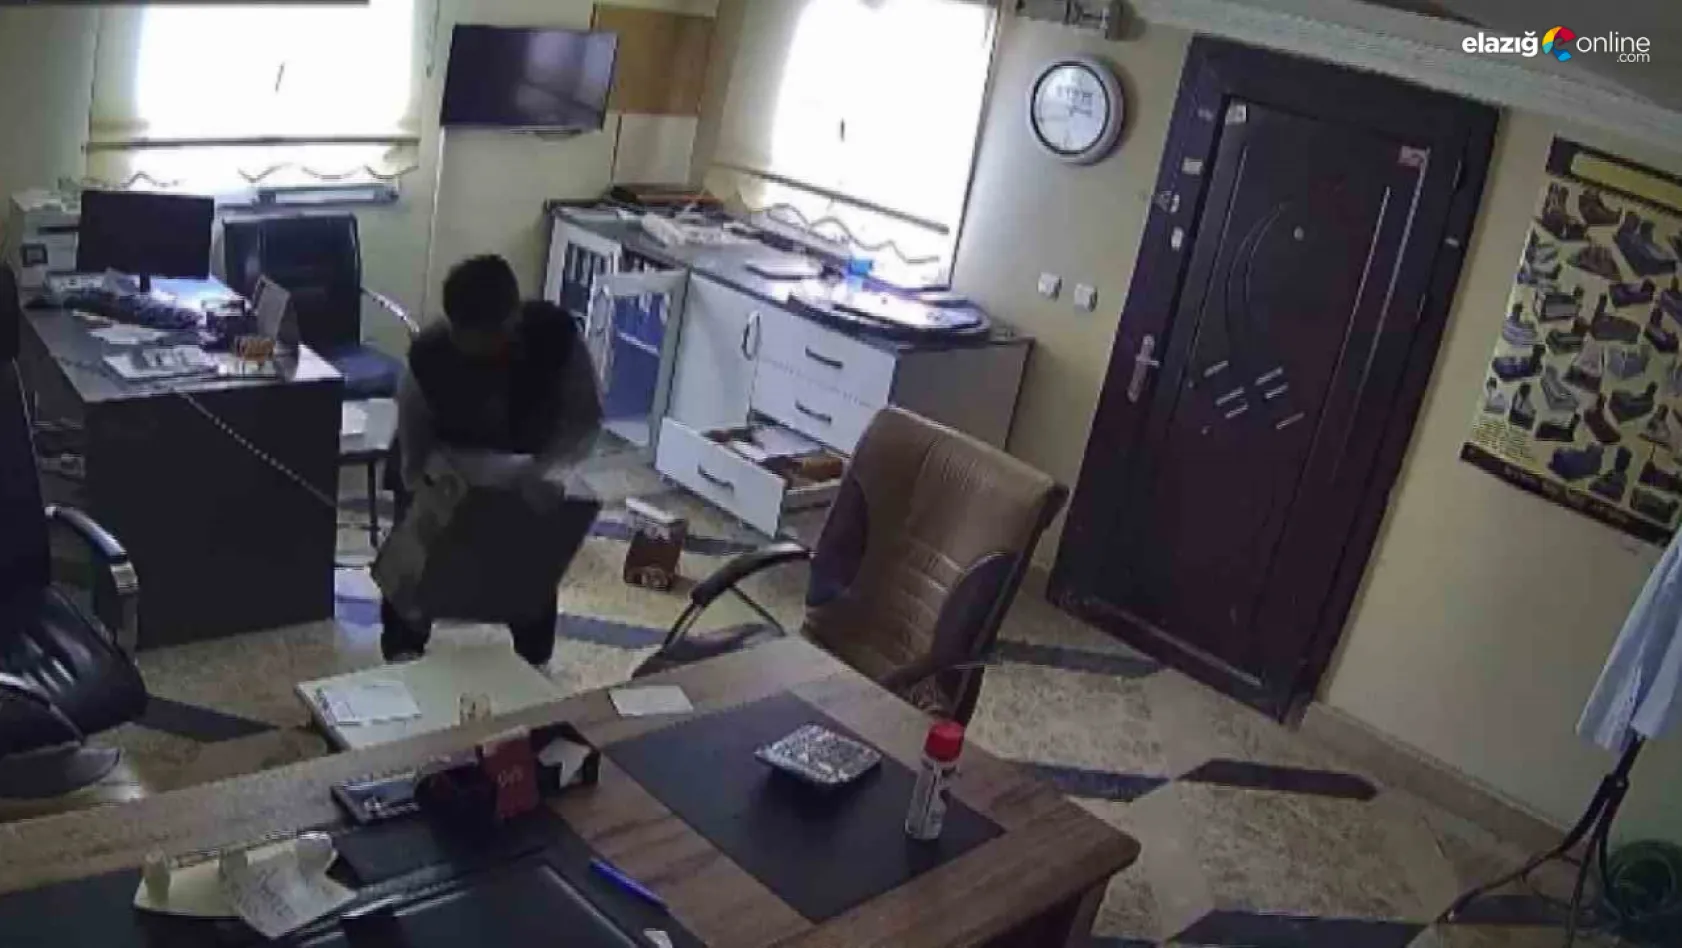 Elazığ'da iş yerindeki hırsızlık olayı kameralara yansıdı